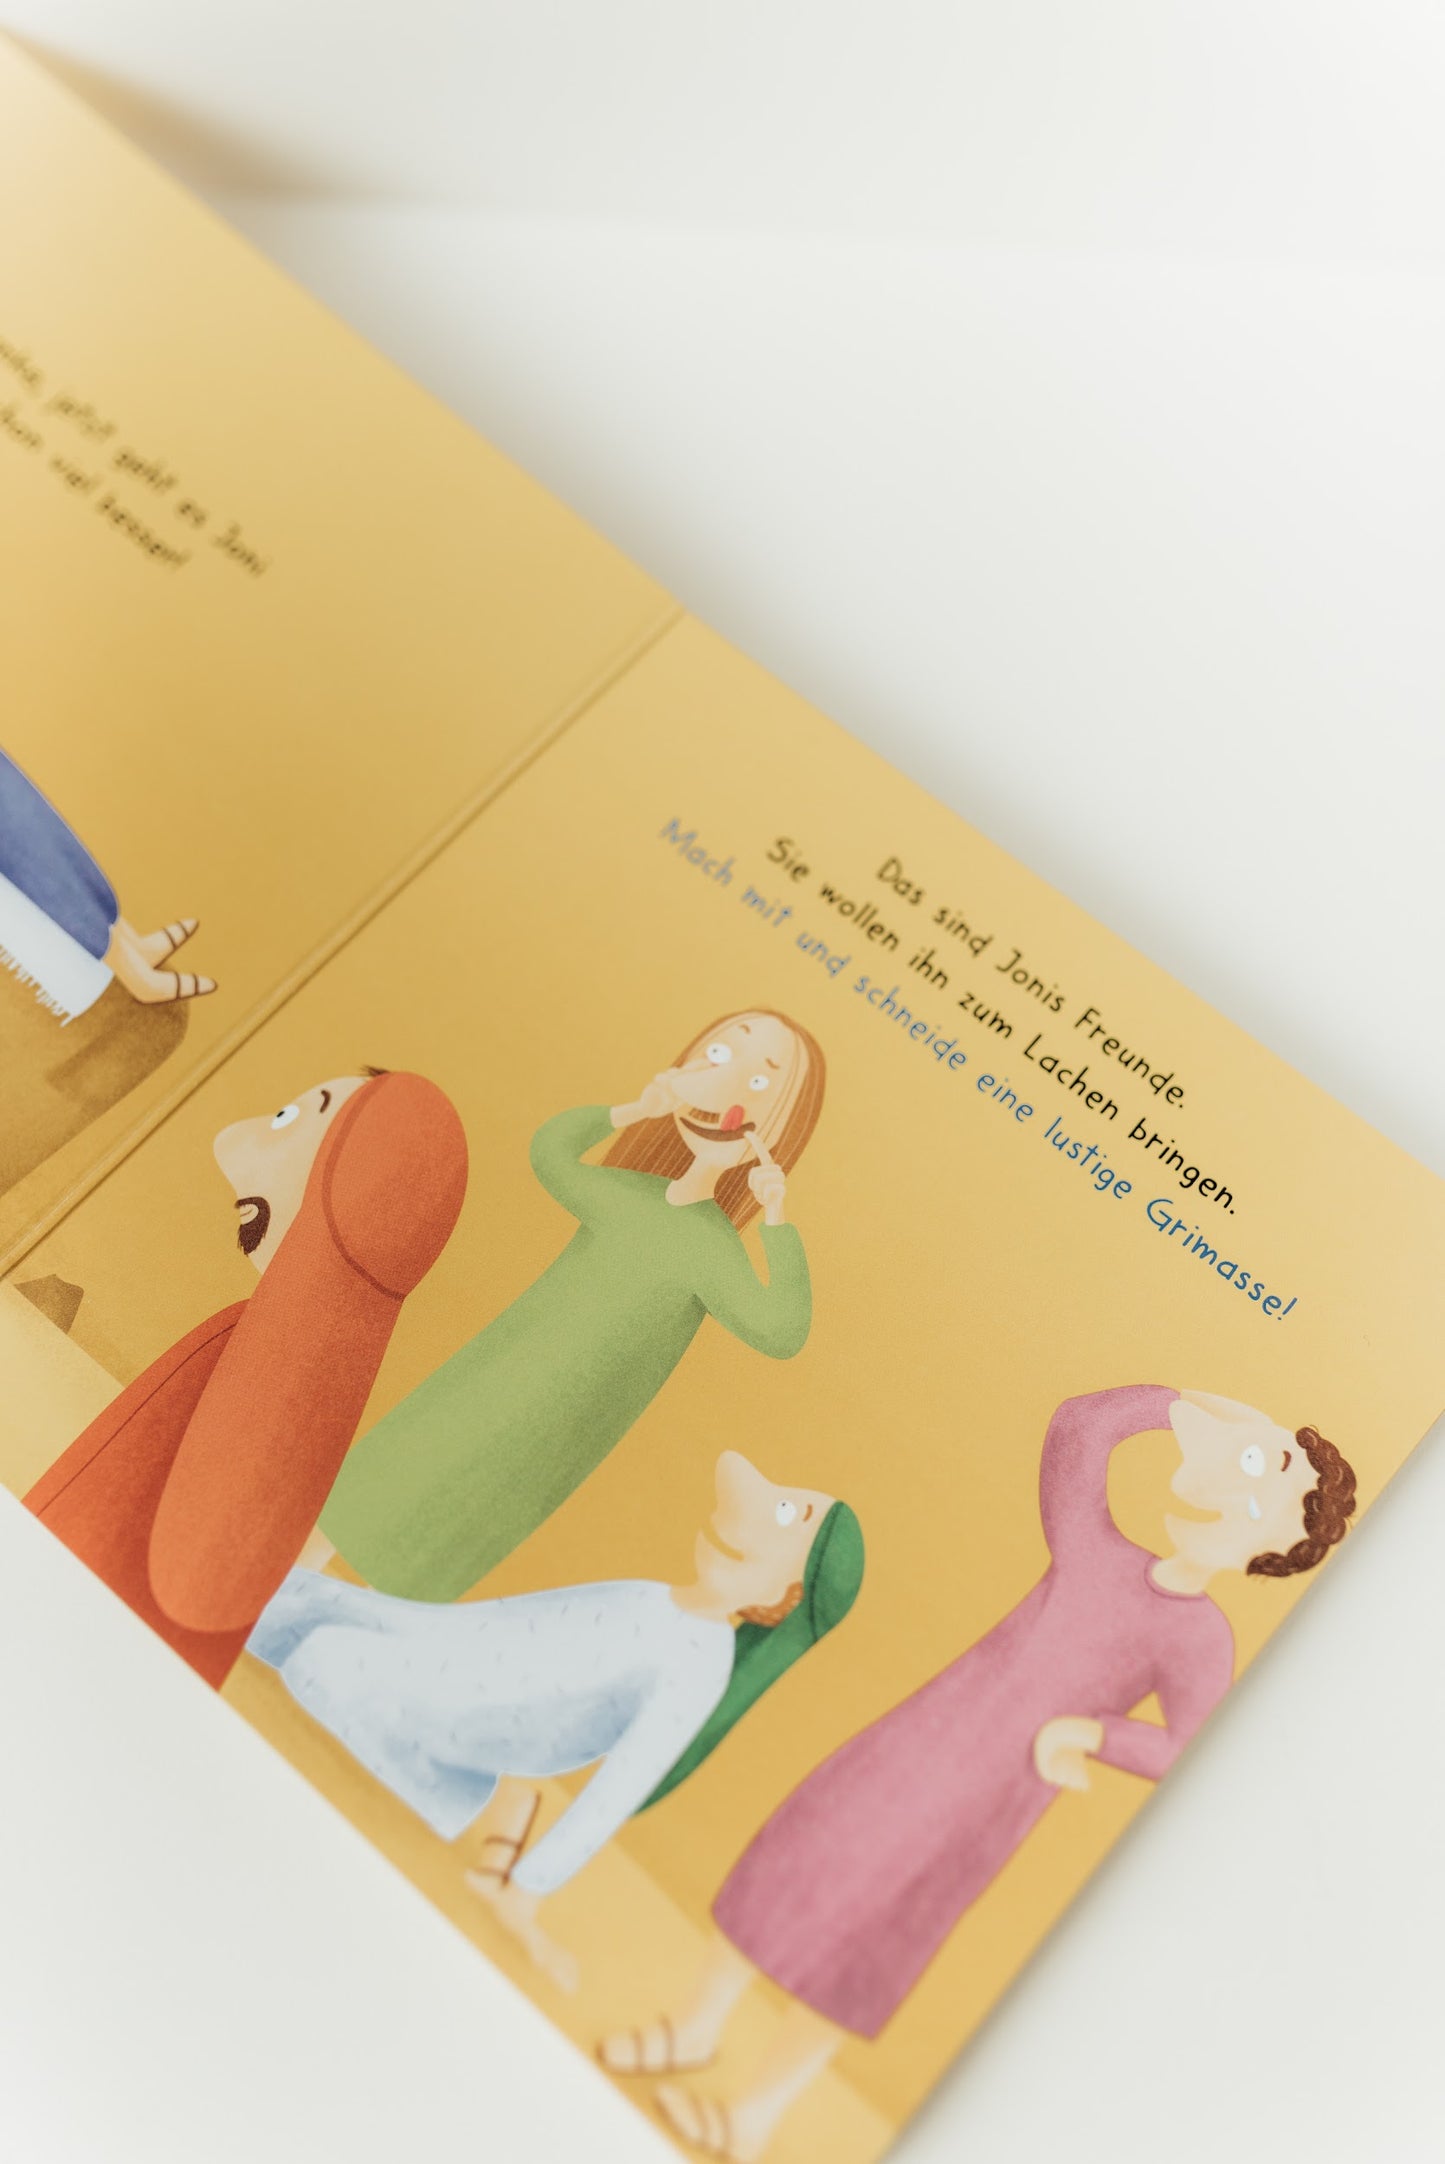 Kinderbuch "Komm mit zu Jesus"